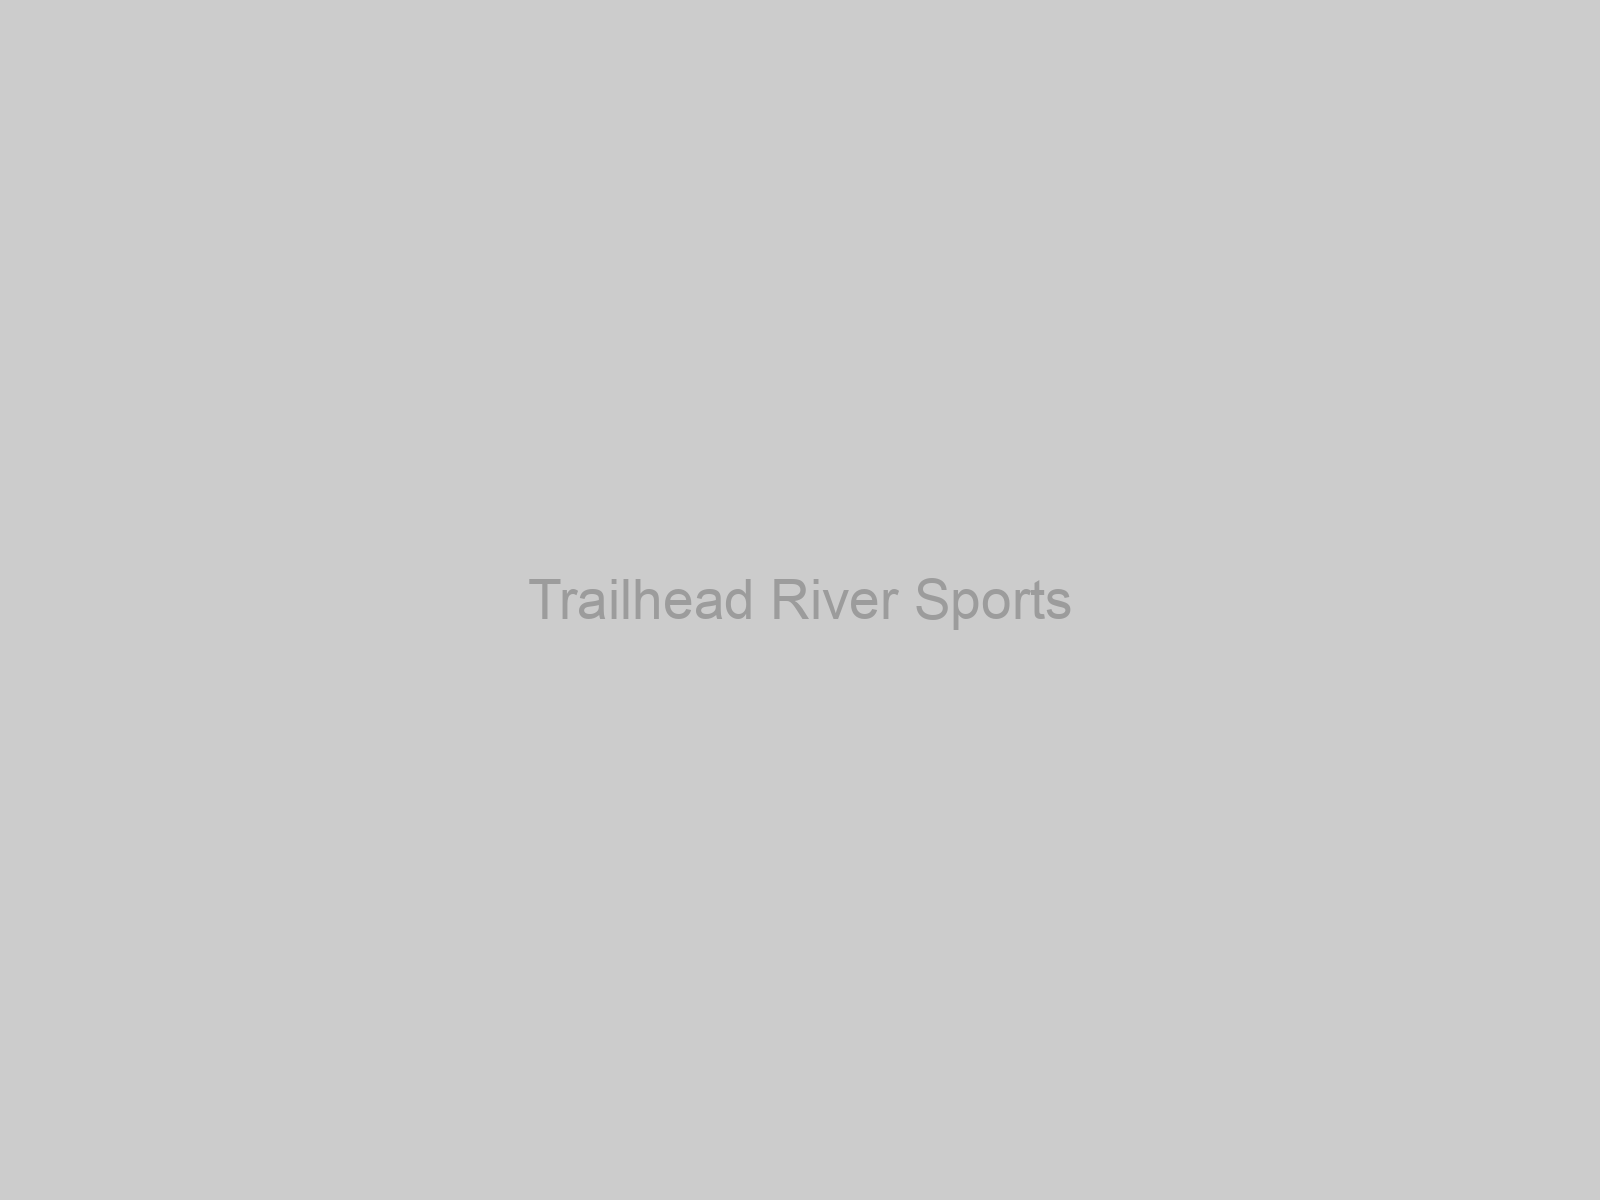 Trailhead River Sports